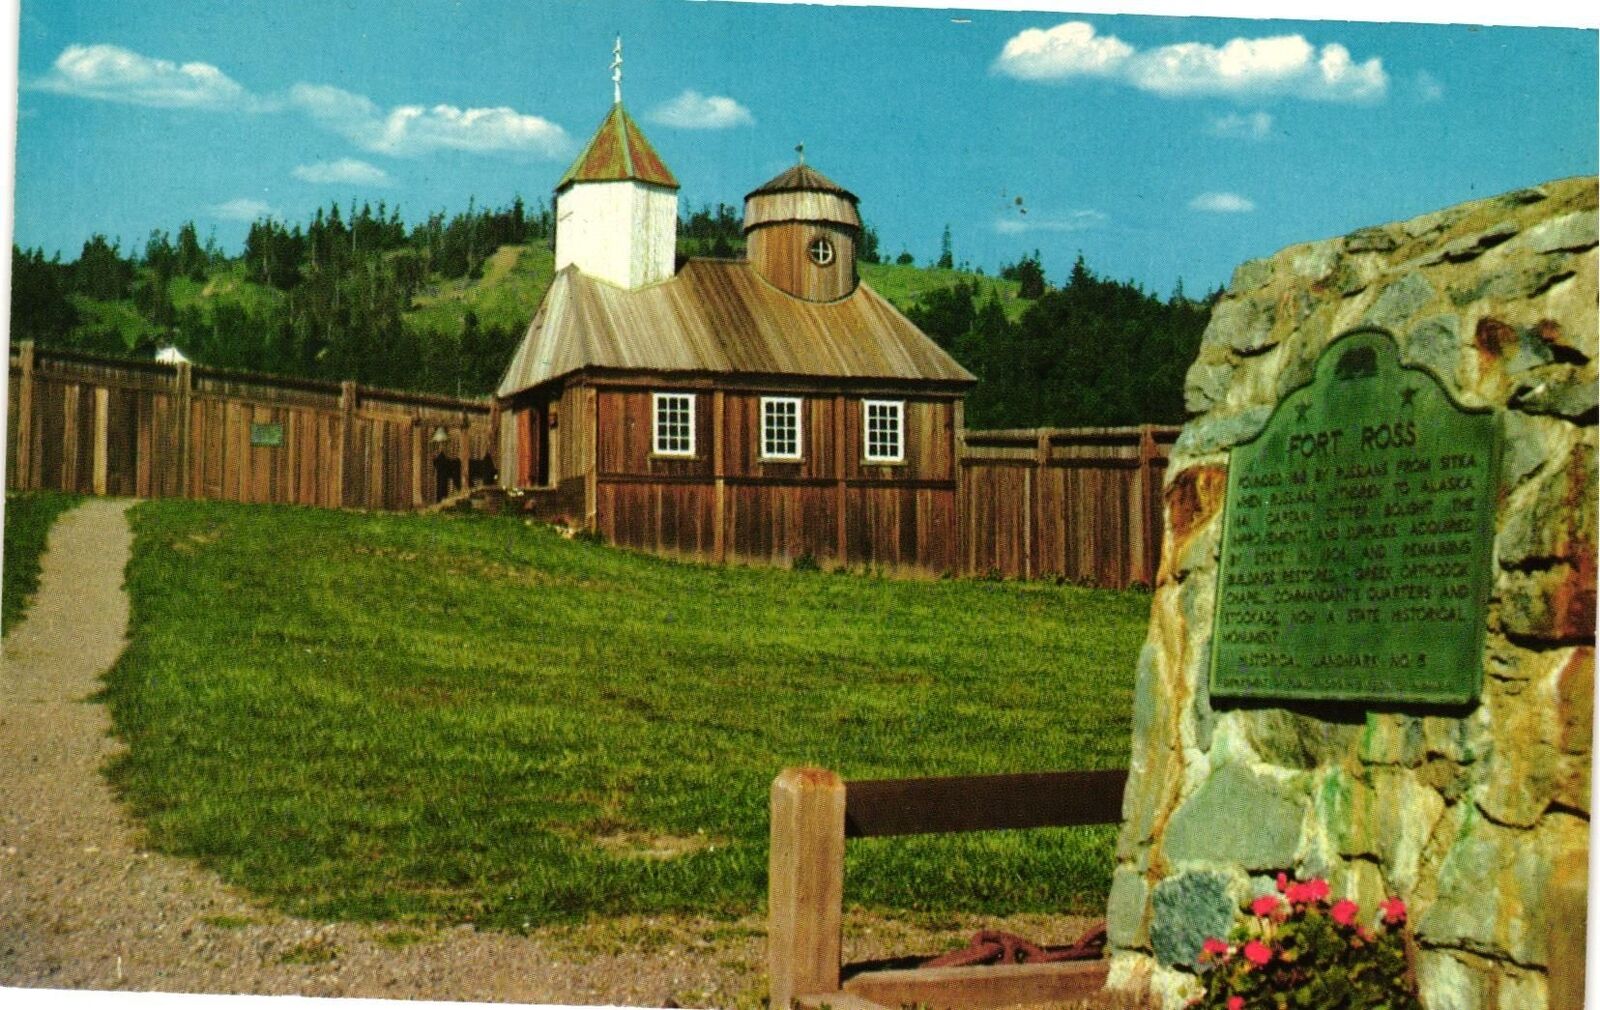 Vintage Postcard- FORT ROSS, CA. 1960s